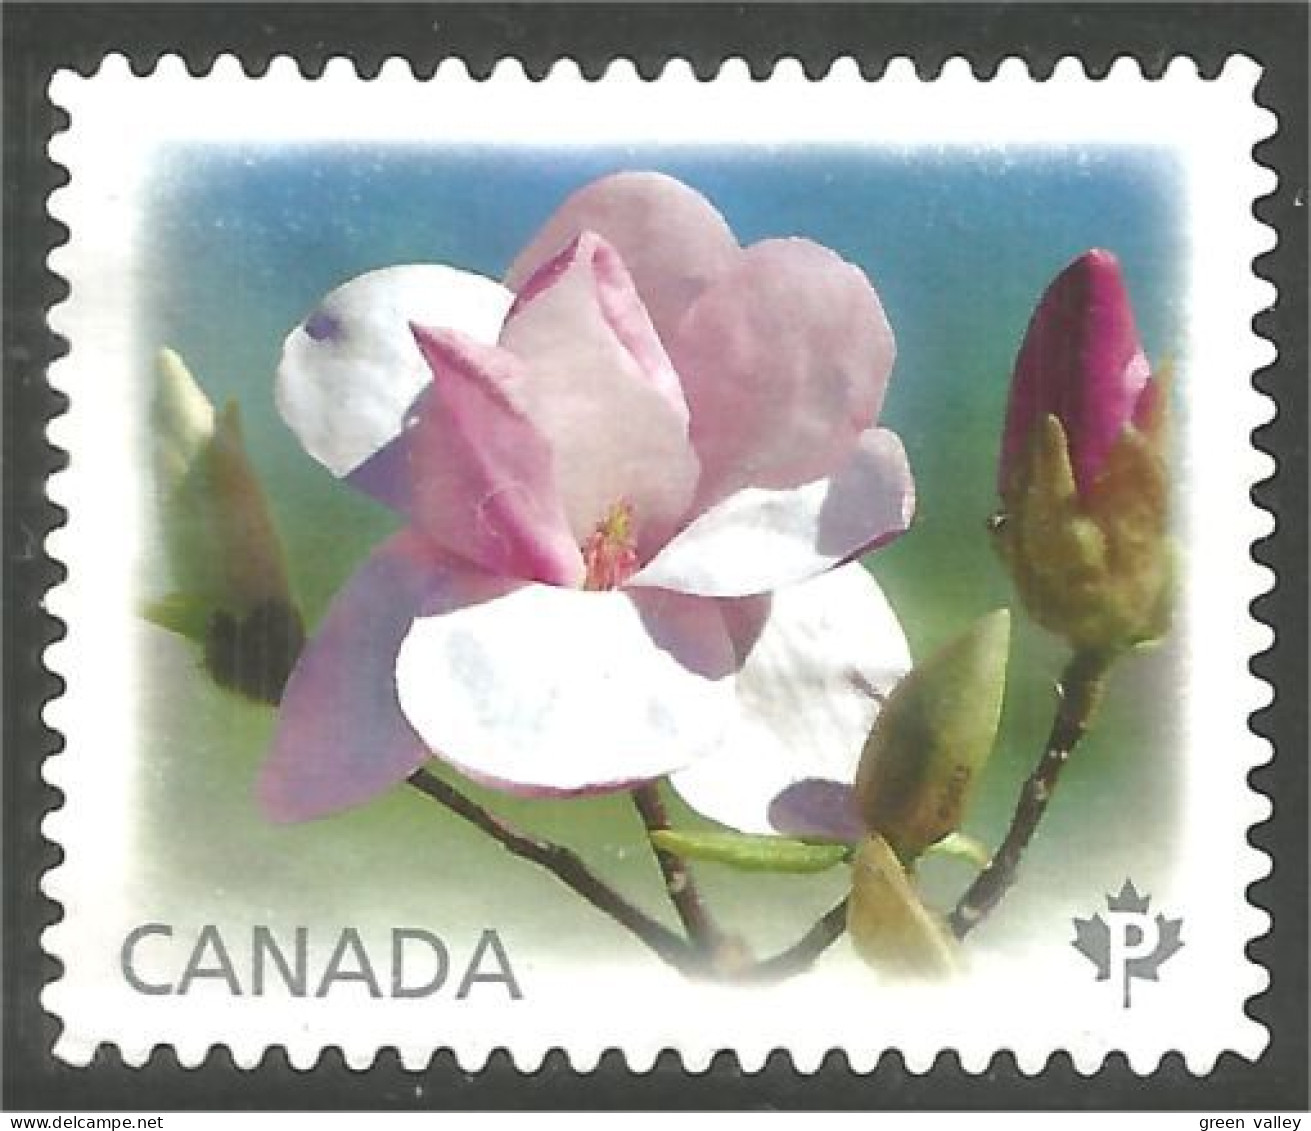 Canada Fleur Flower Rose Mint No Gum (156) - Gebruikt